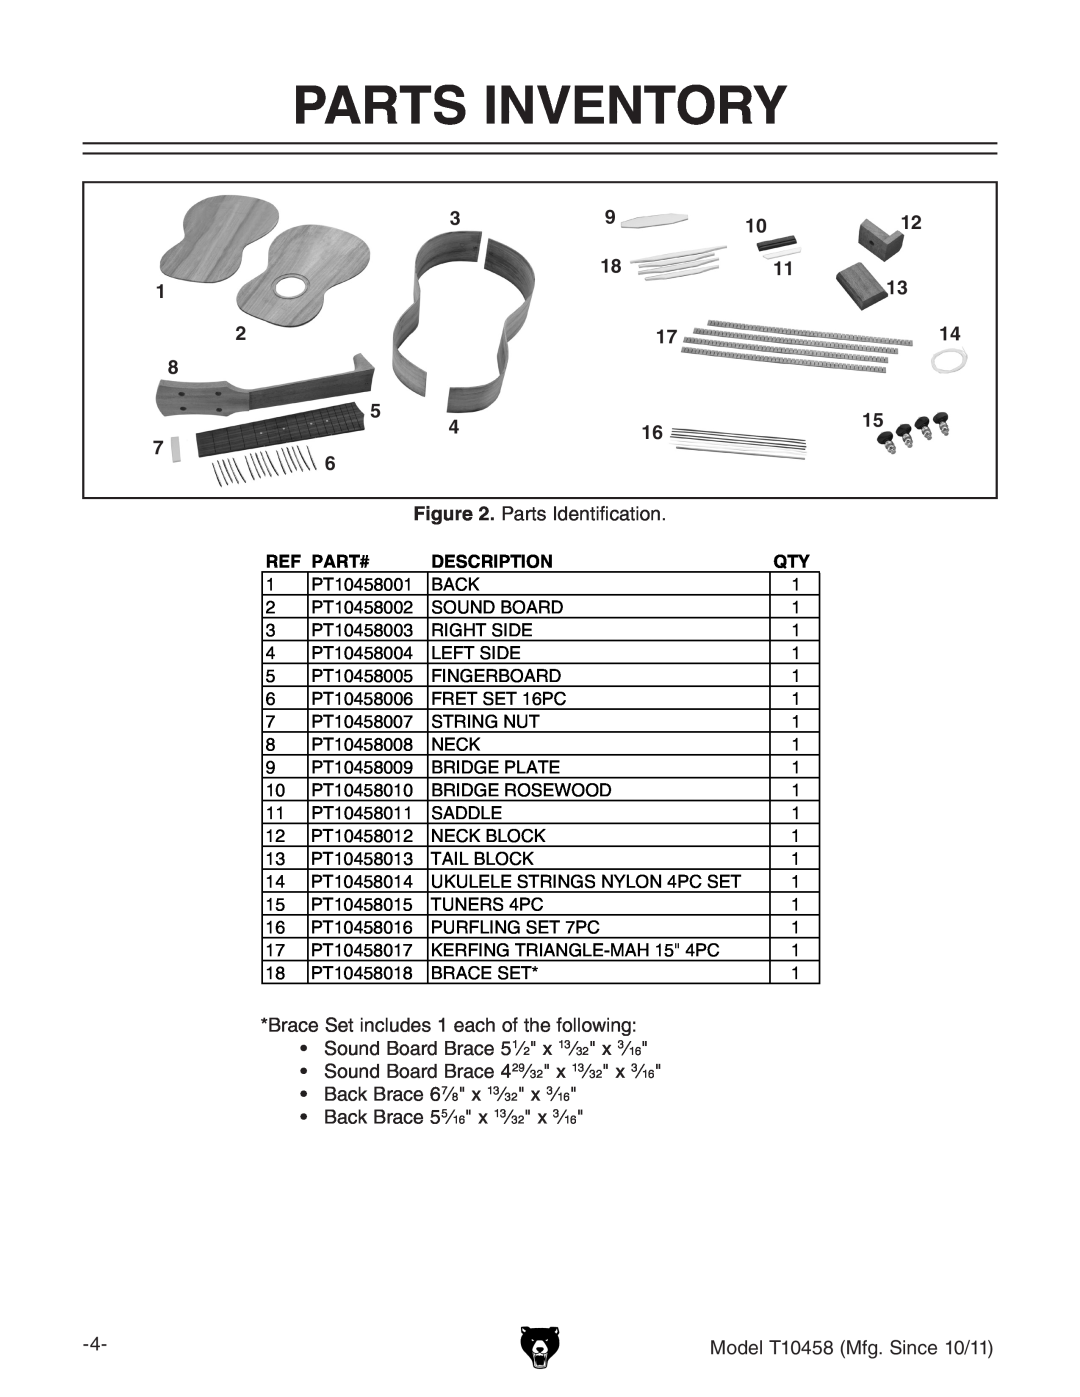 Grizzly T10458 instruction manual Parts Inventory, Ref Part#, Description 